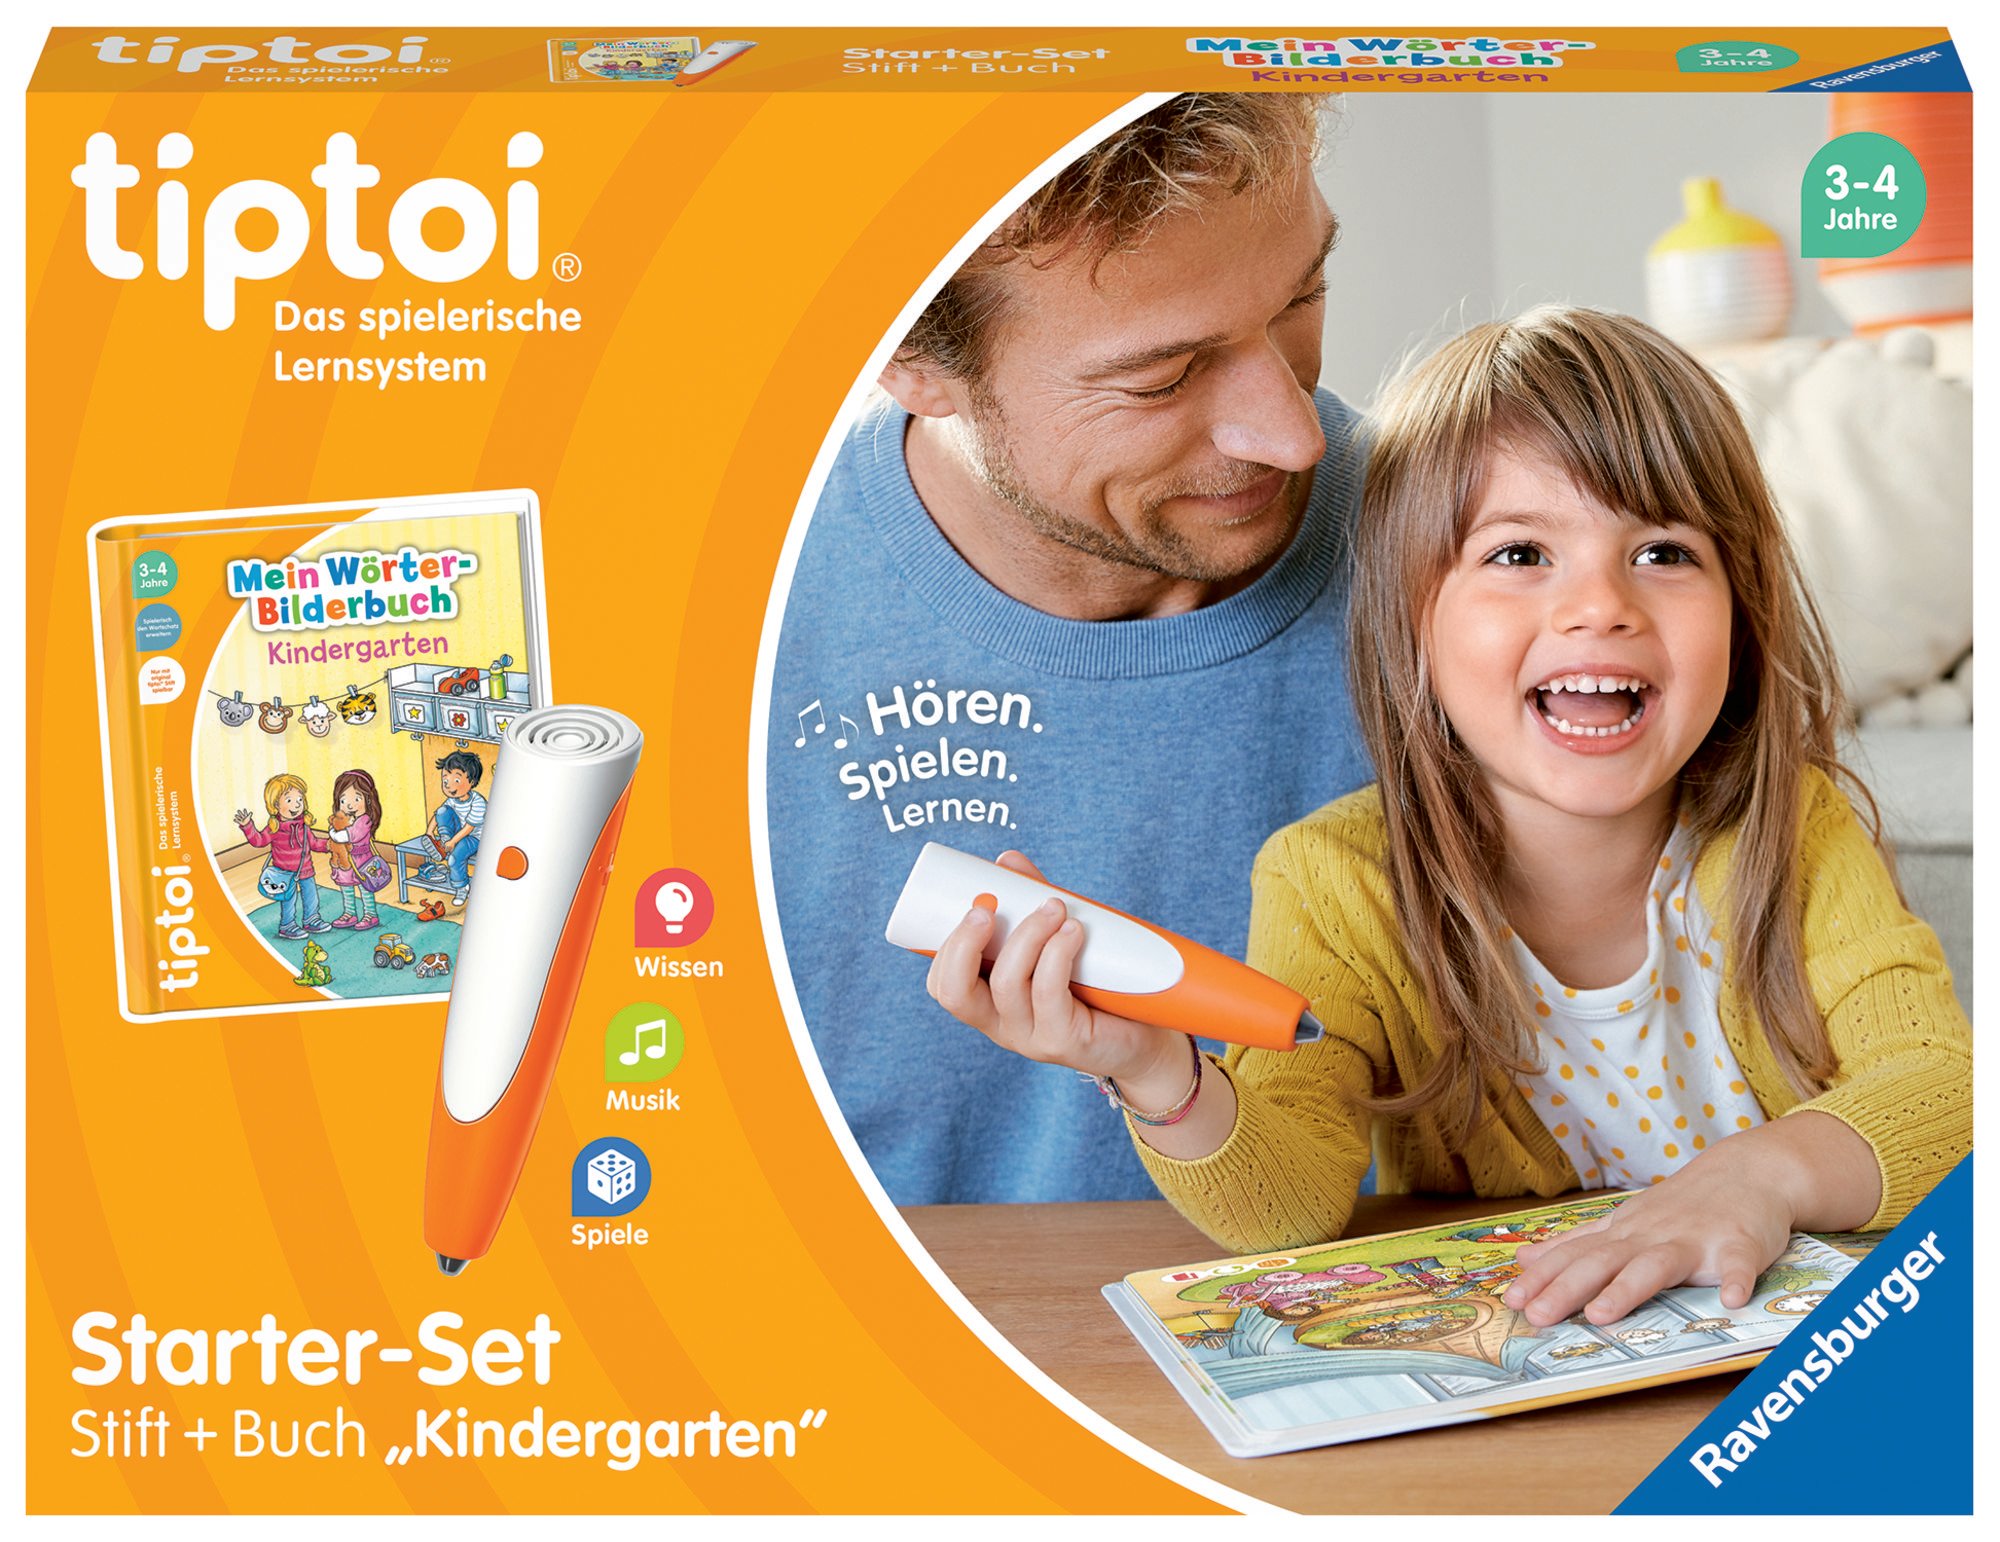 Ravensburger 00113 - tiptoi® Starter-Set, Stift + Buch Wörter-Bilderbuch  Kindergarten, Lernsystem\' kaufen - Spielwaren